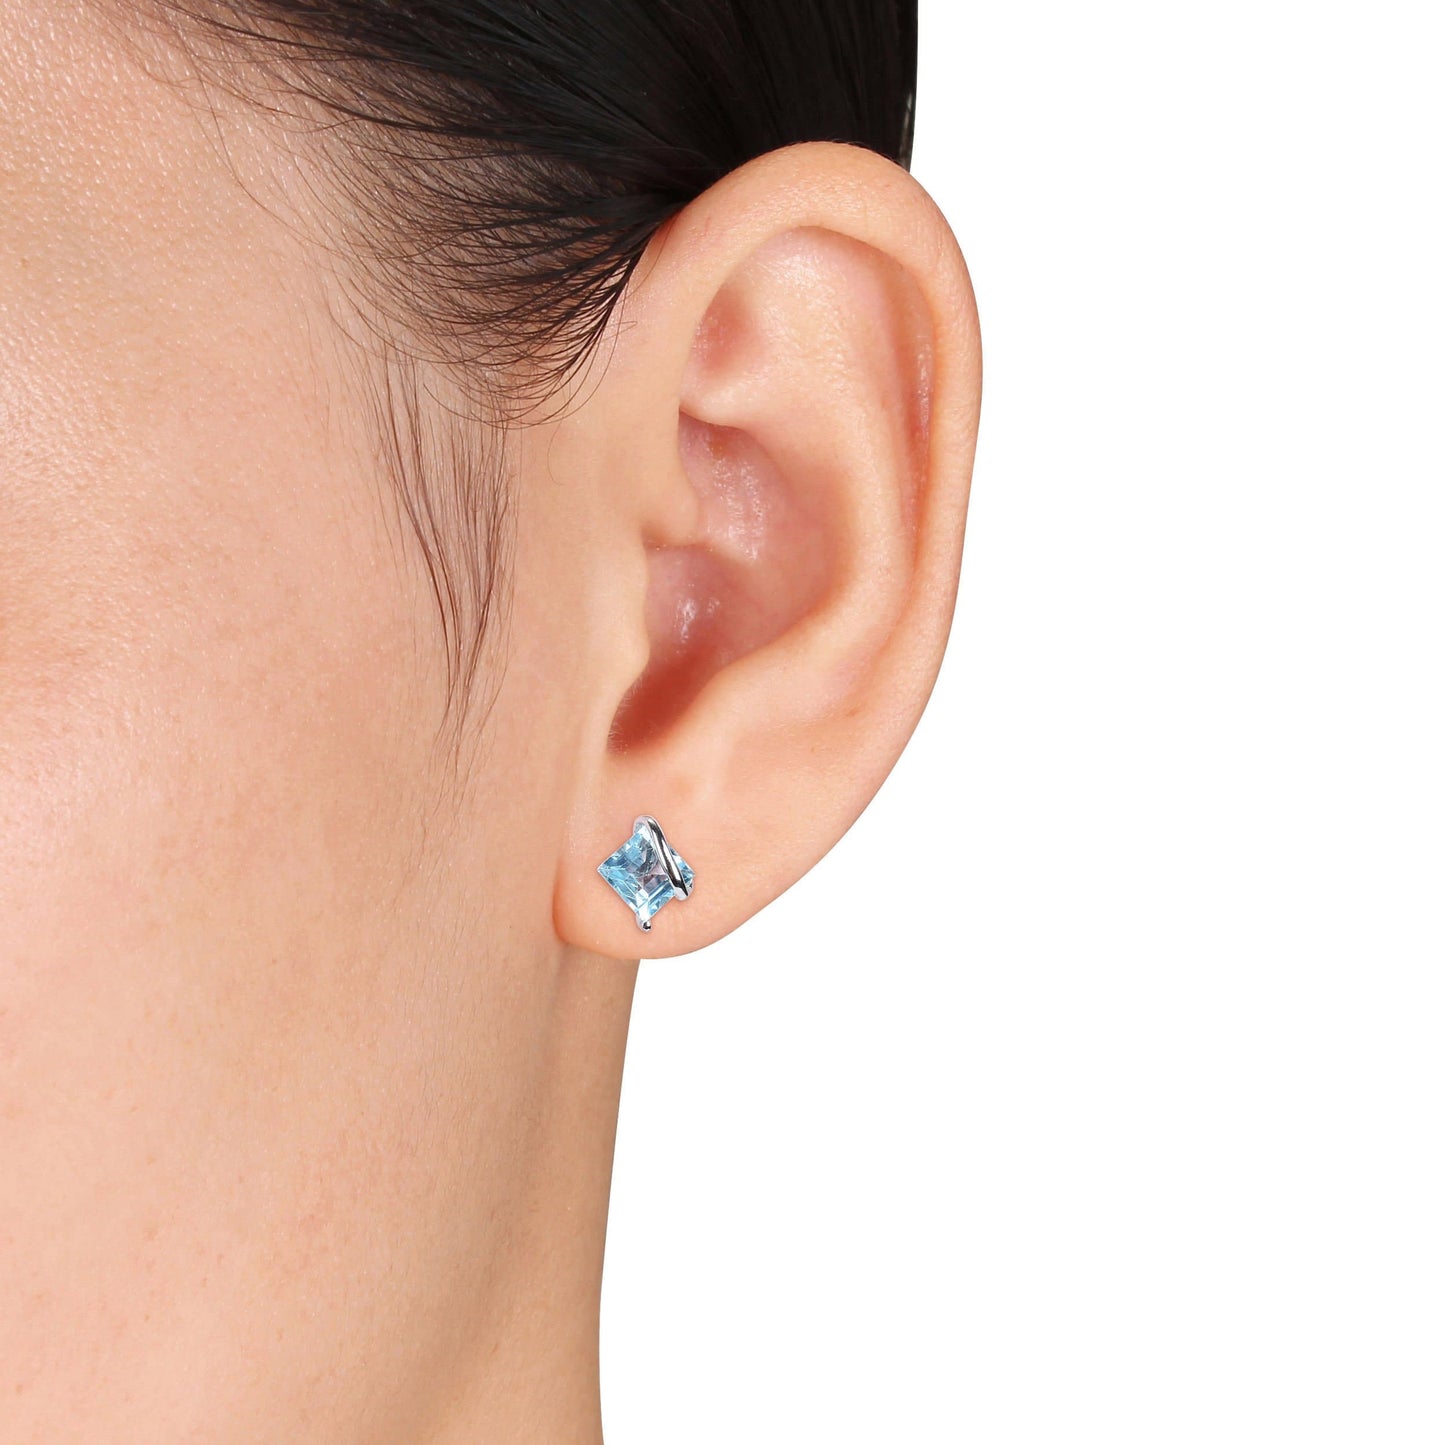 Sophia B 2 3/4ct Blue Topaz Earrings in Silver Earrings